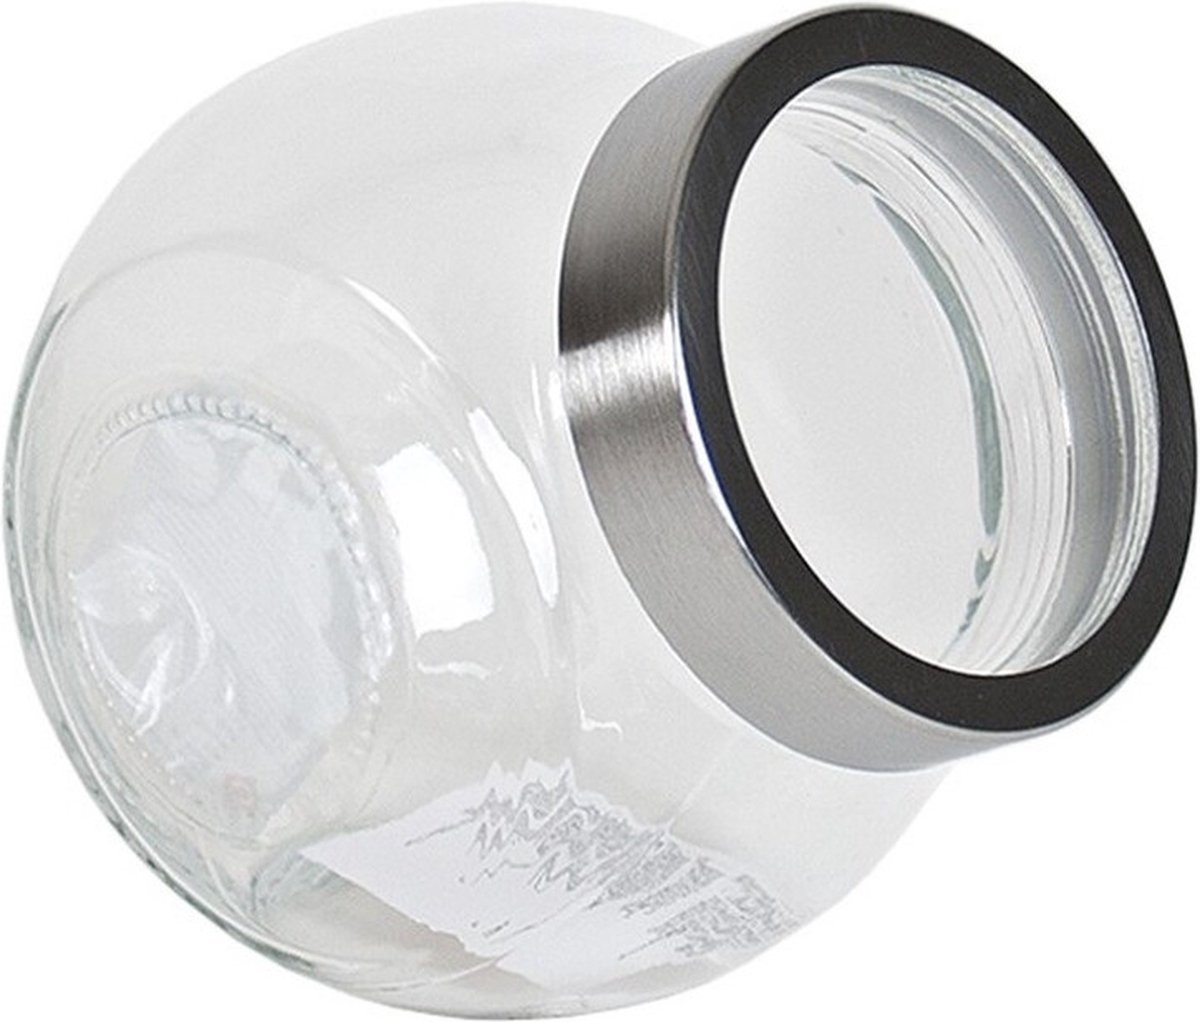 Gerim Snoeppot/voorraadpot van glas - transparant - 1500 ml - met deksel